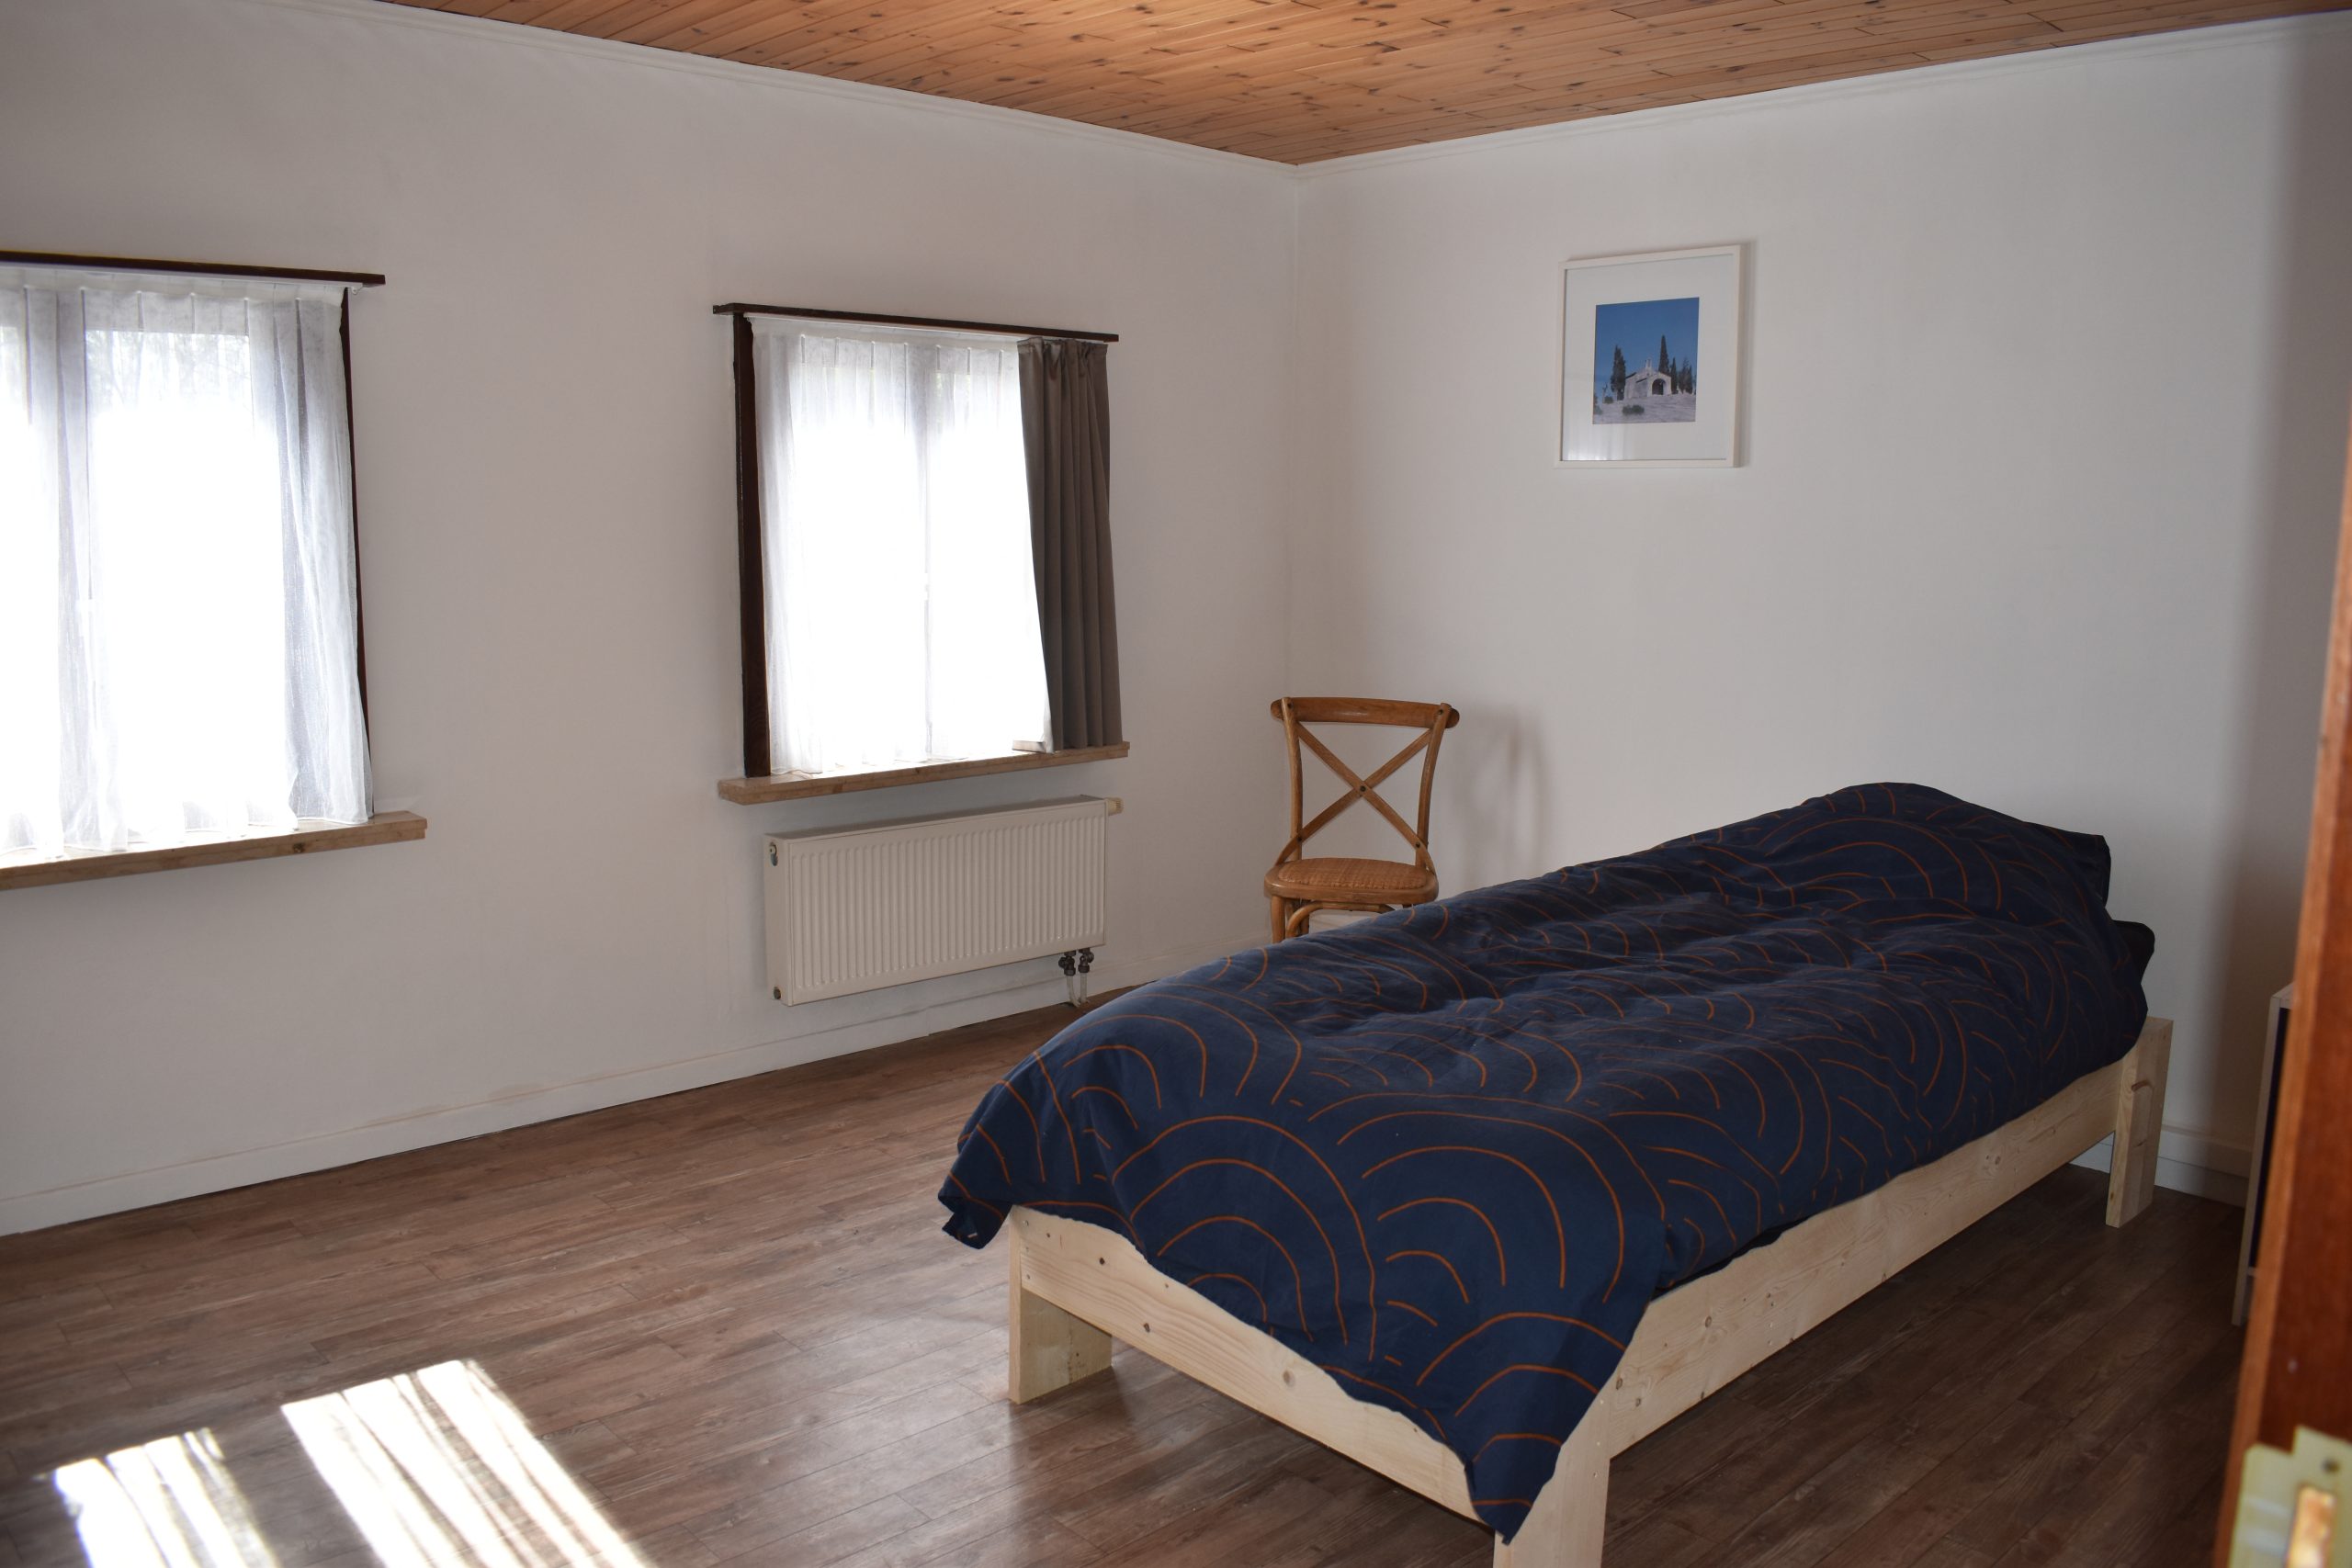 4-bedroom for rent in Antwerp - bedroom